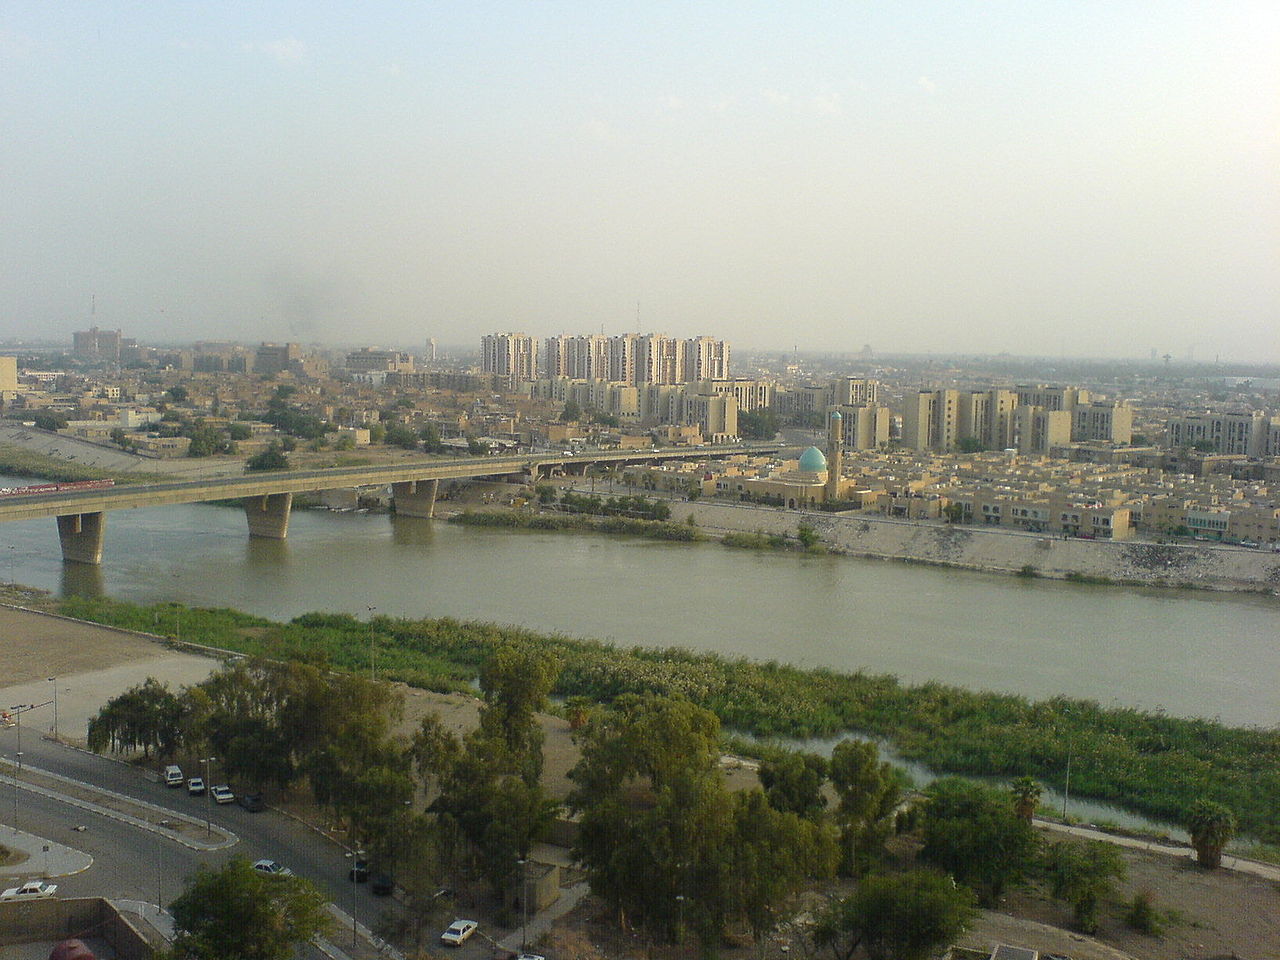 وسط مدينه بغداد من نهر دجلة (ويكيبيديا)